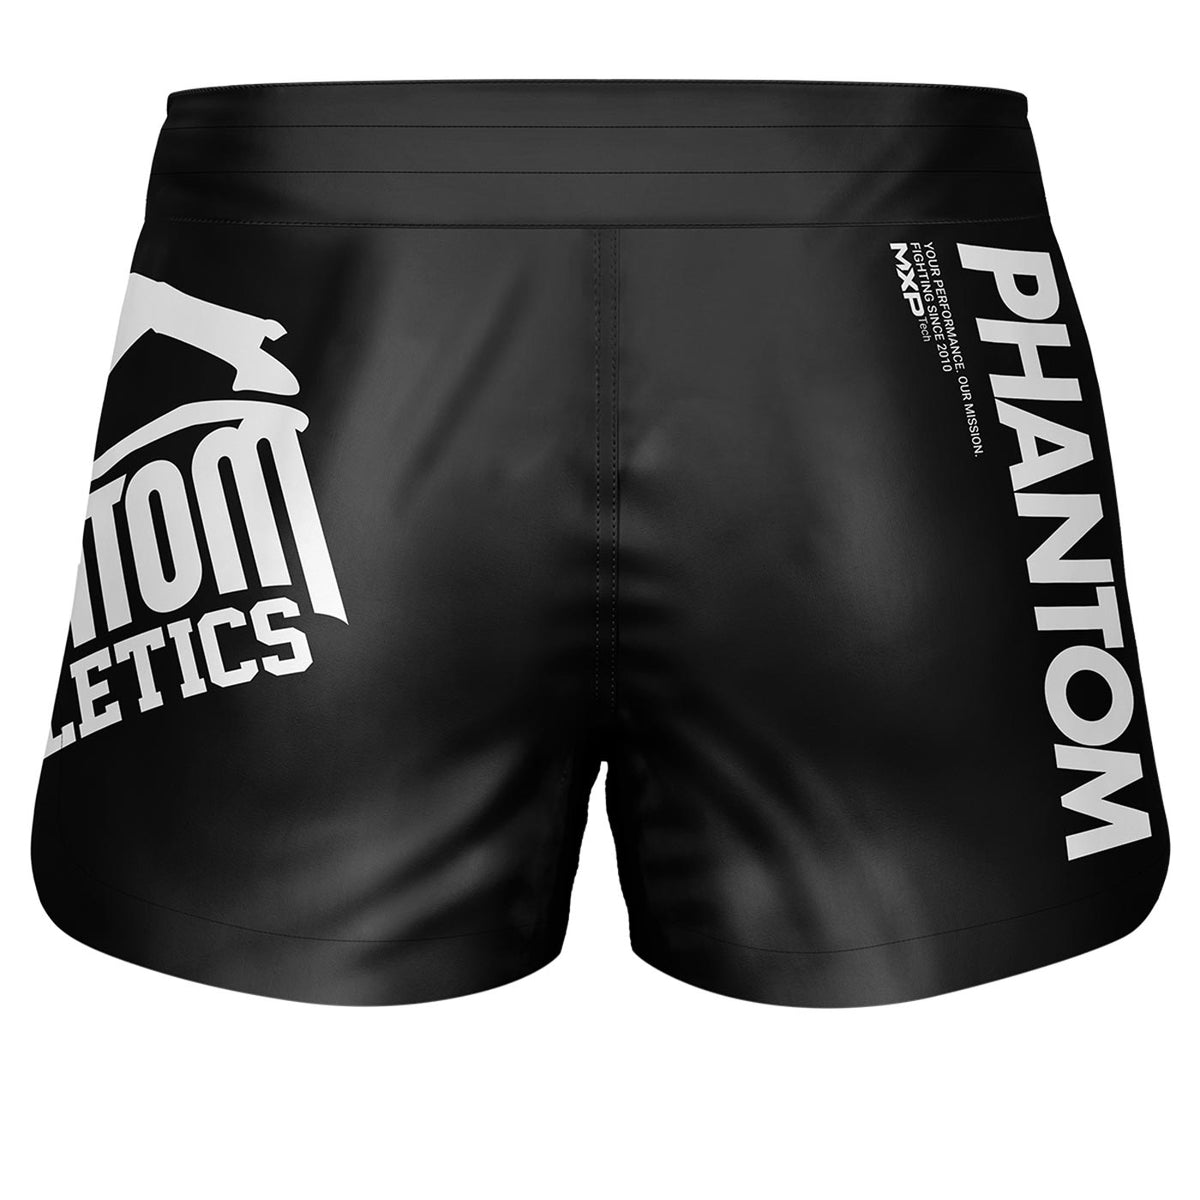 Phantom Fightshorts Fusion 2in1. Ultimative Shorts für deinen Kampfsport. IDeal für MMA, Muay Thai, BJJ, Ringen und mehr. In schwarzem Design mit großem Phantom Logo.